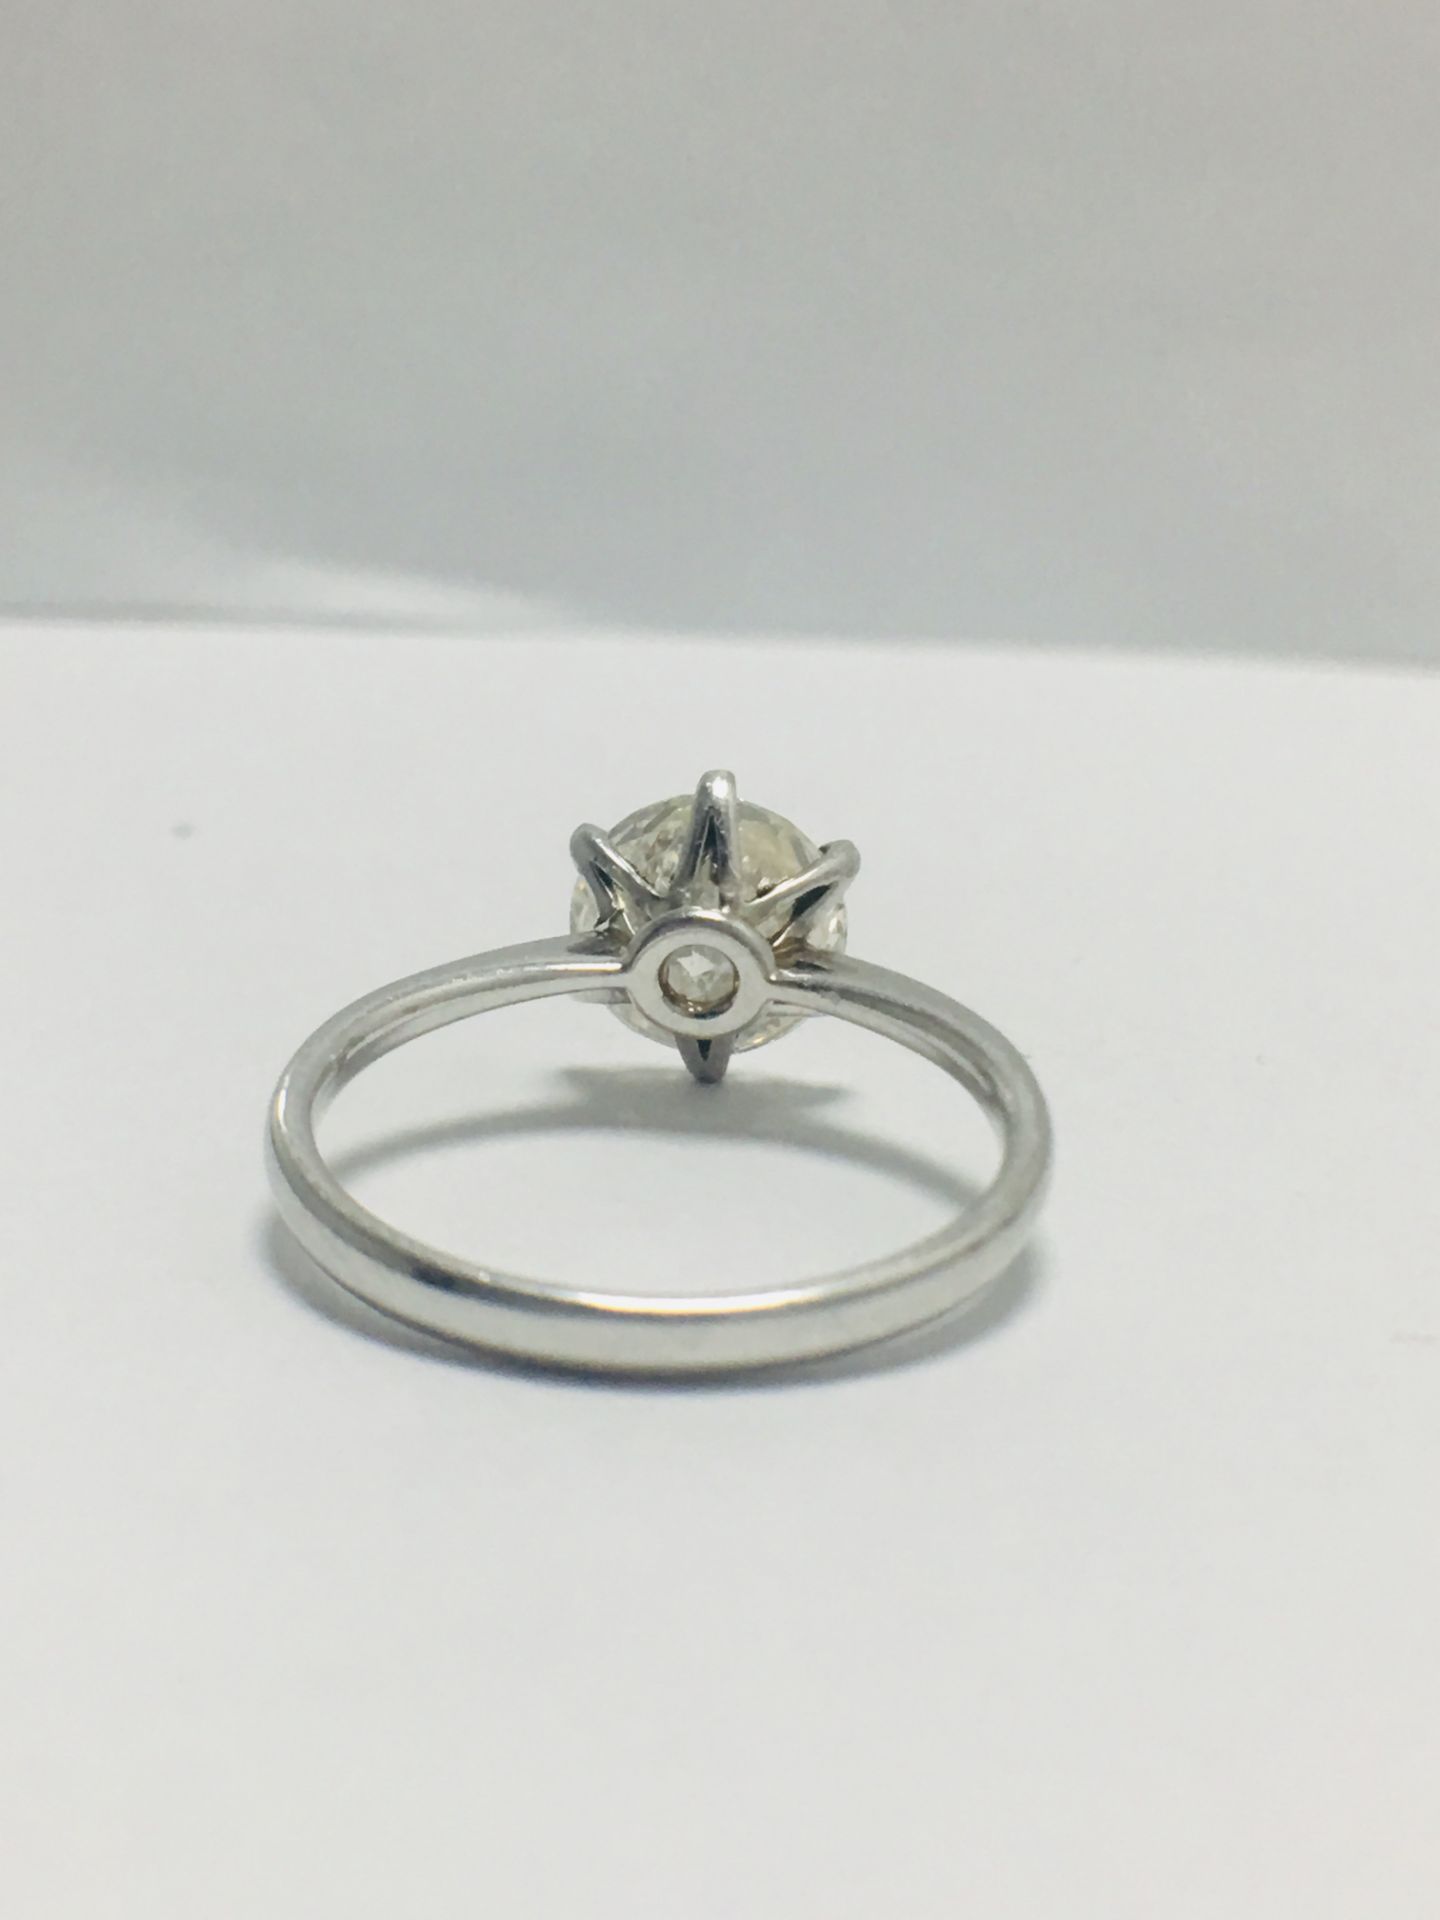 2.08Ct Brilliant Cut Solitaire Ring Set In Platinum - Image 4 of 7